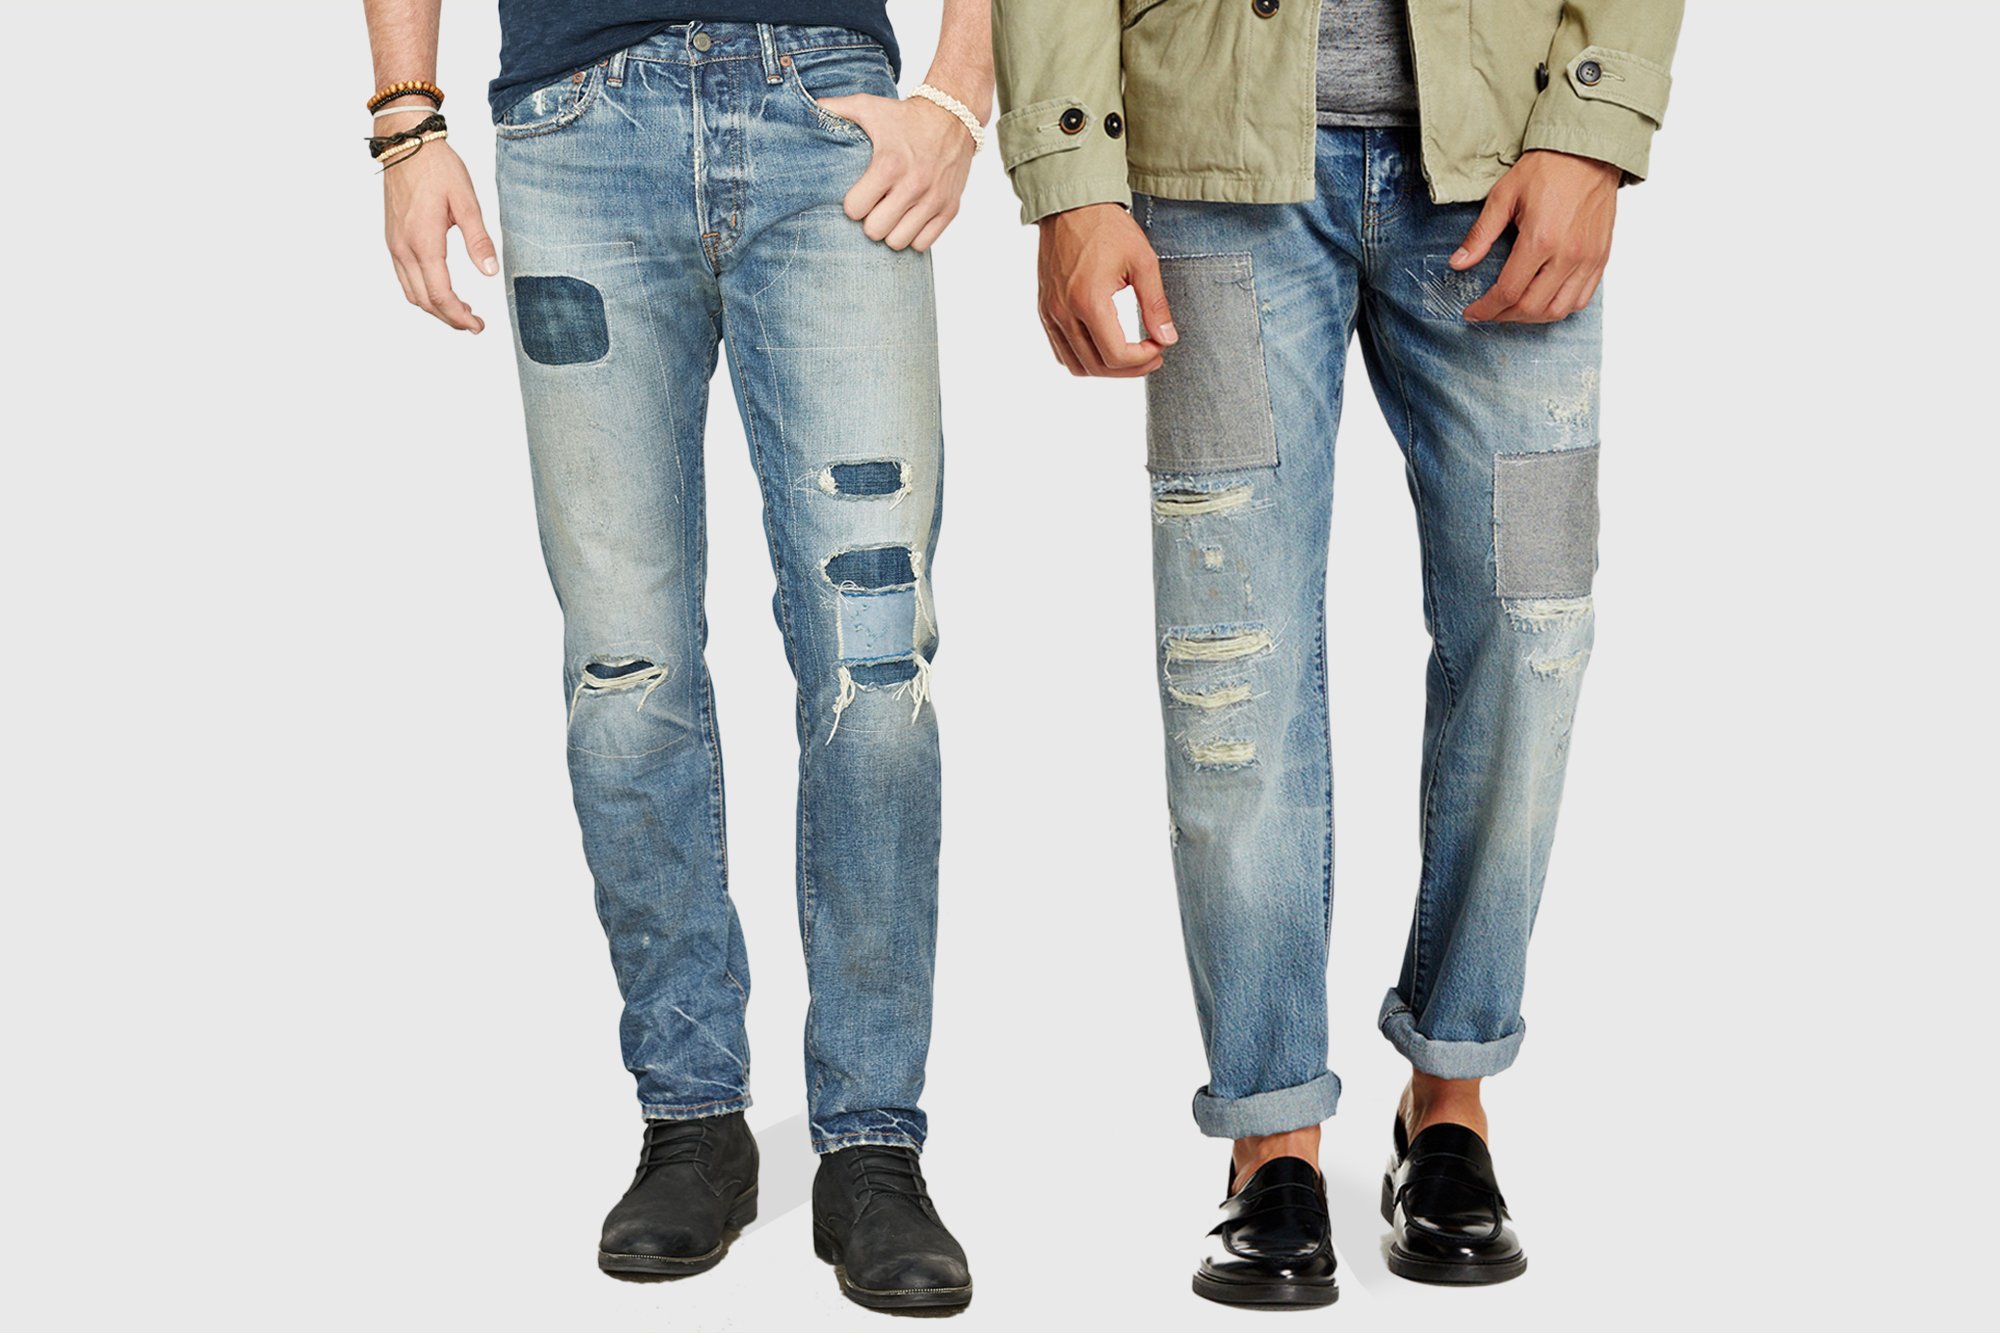 Мужские джинсы распродажа. Джинсы Denim мужские. Джинсы мужские на белом фоне. Мужчина в джинсах. Джинсы с футболкой мужские.